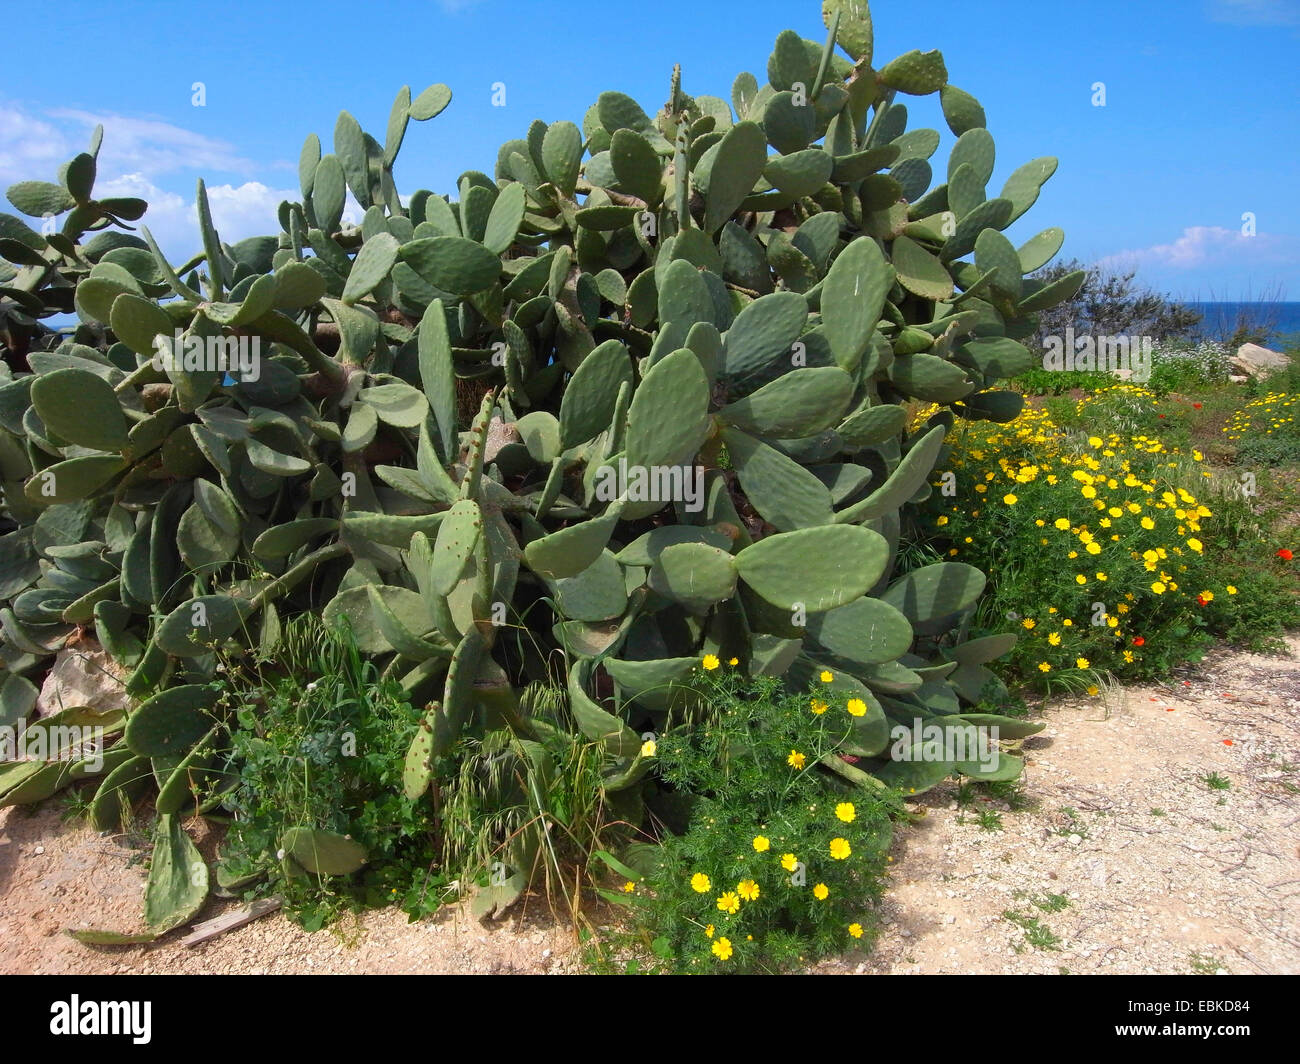 Indian fig, cactus pear (Opuntia ficus-indica, Opuntia ficus-barbarica), sulla costa mediterranea, Cipro Foto Stock